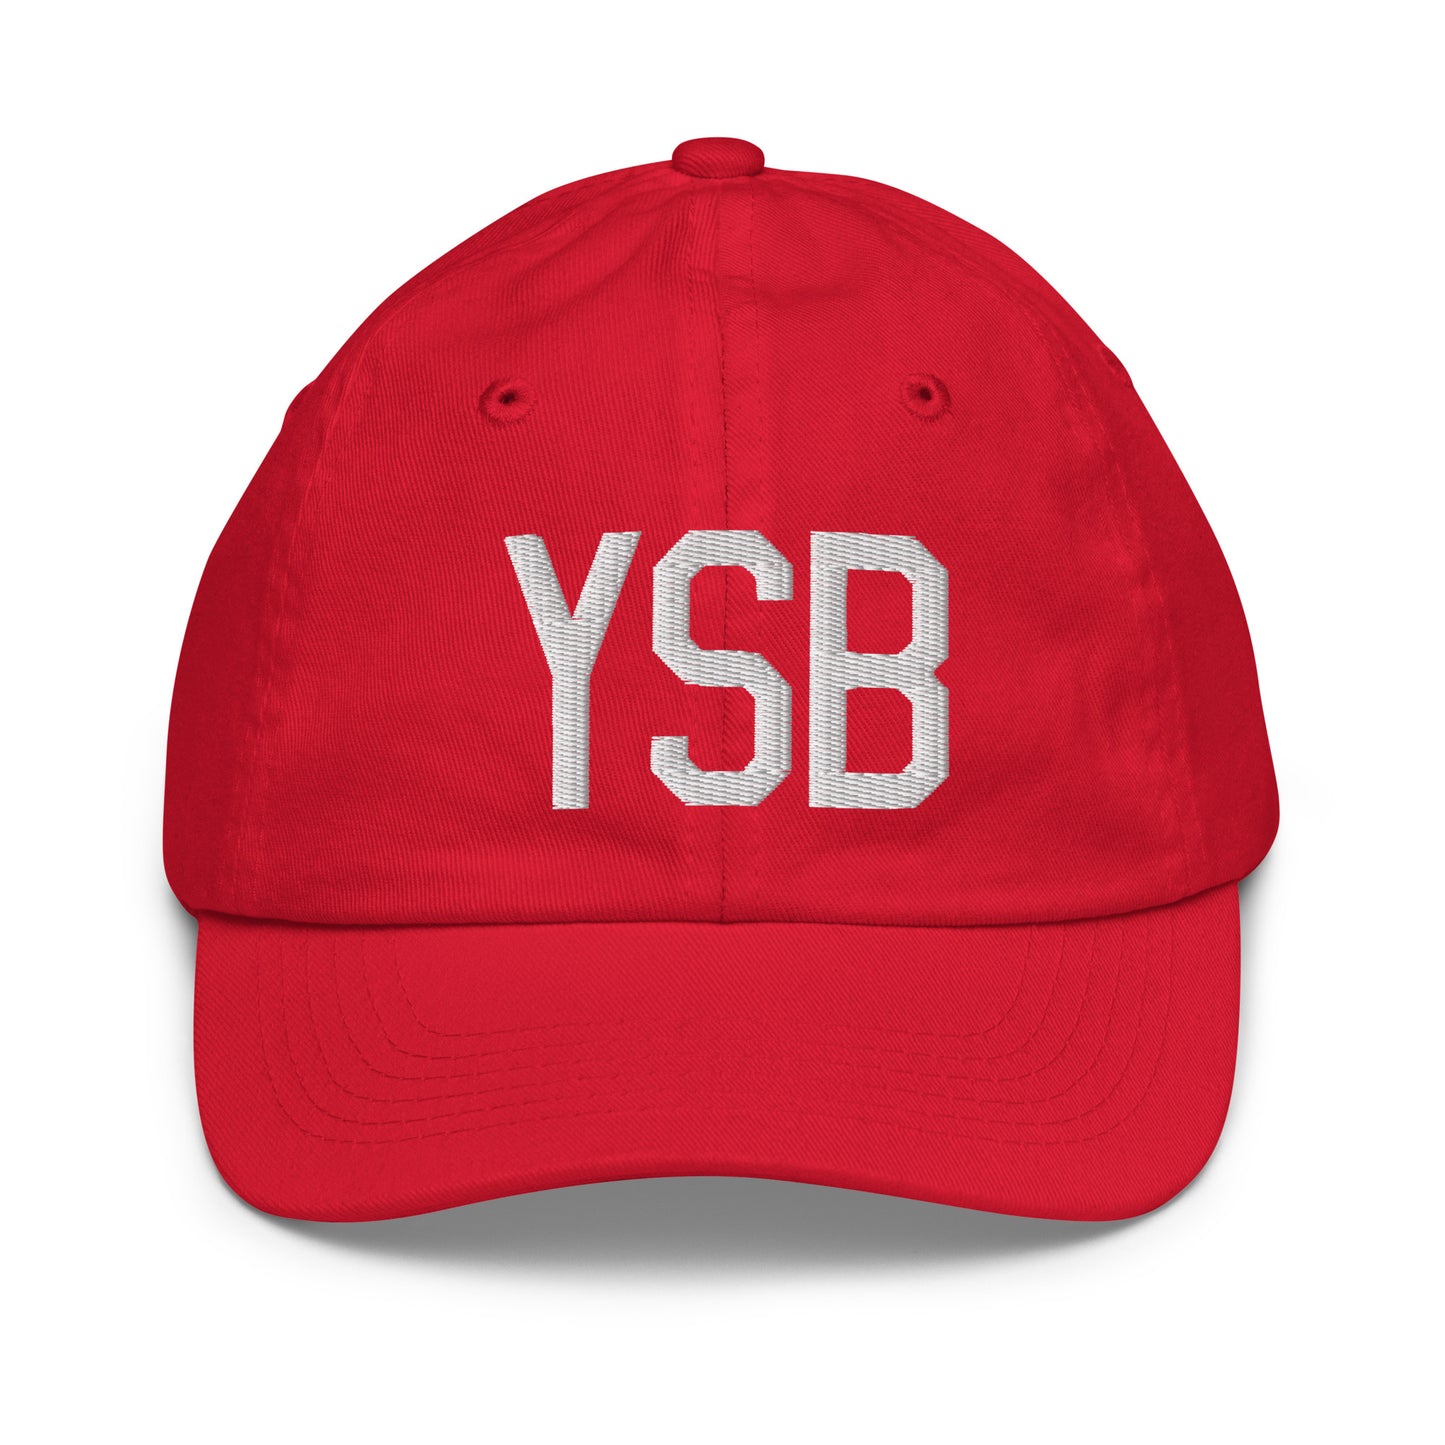 Airport Code Kid's Baseball Cap - White • YSB Sudbury • YHM Designs - Image 17